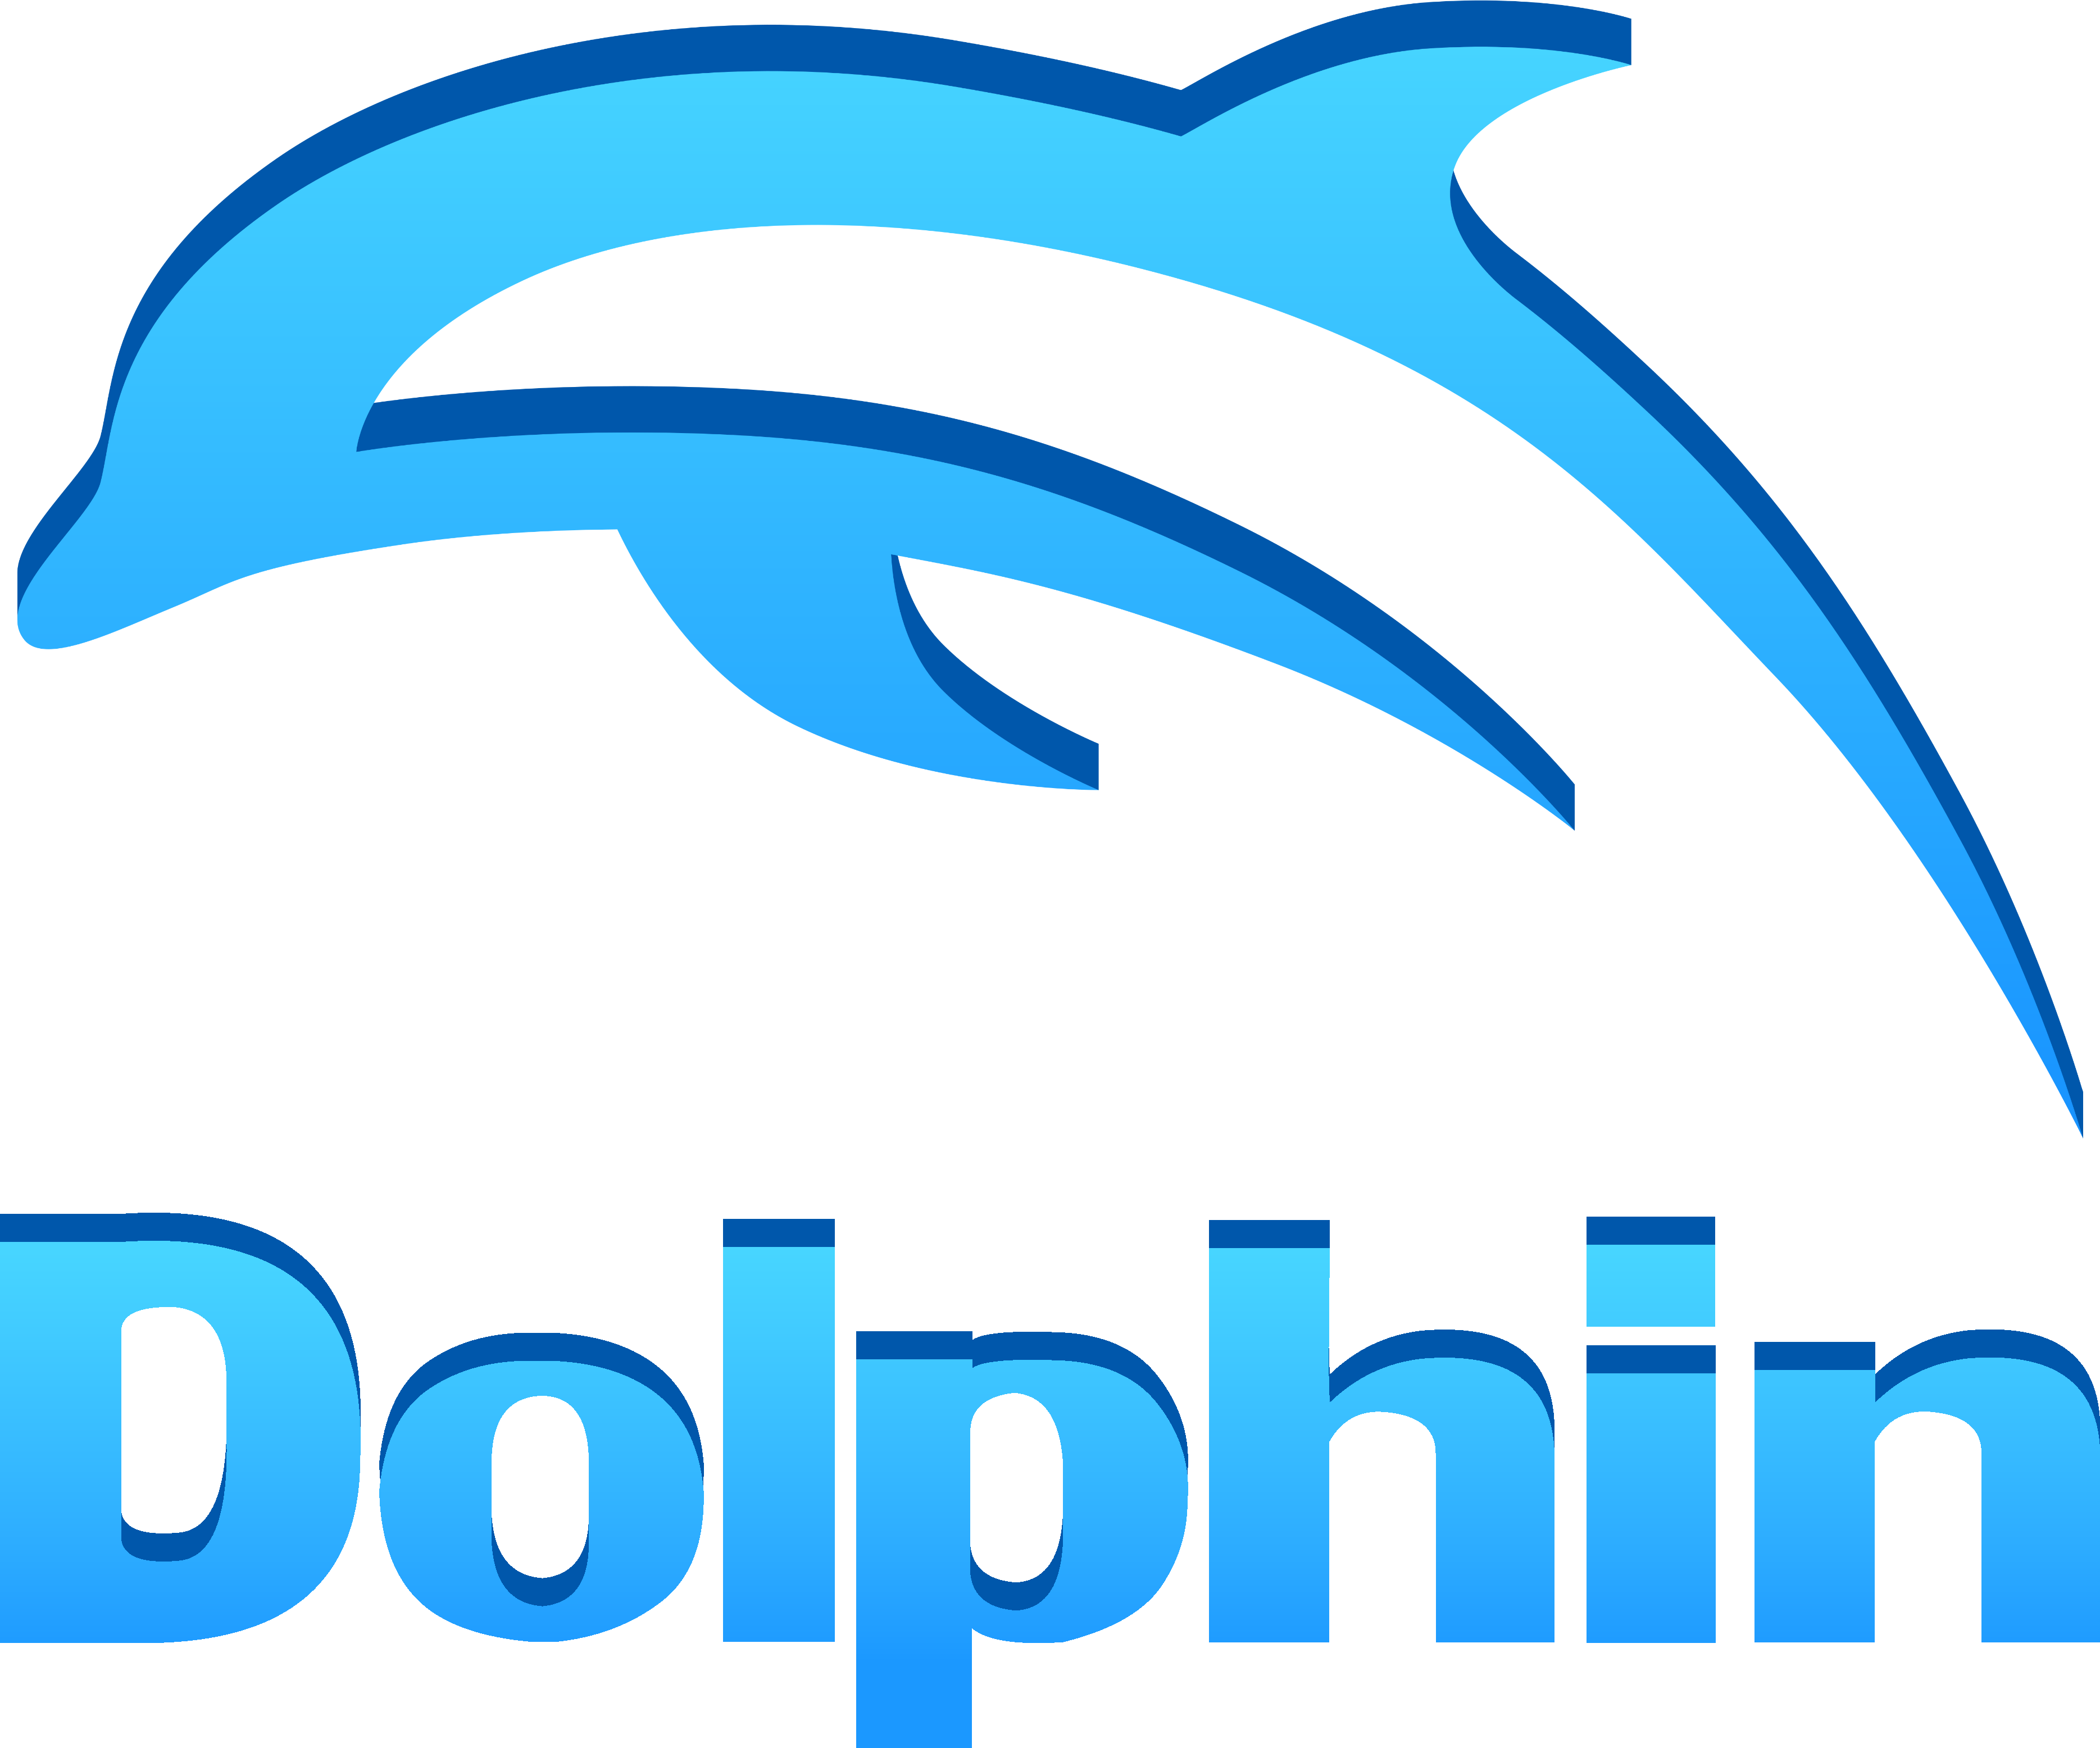 Dolphin api. Дельфин логотип. Долфин лого. Логотип бассейна Дельфин. Бассейн Дельфин эмблемами.